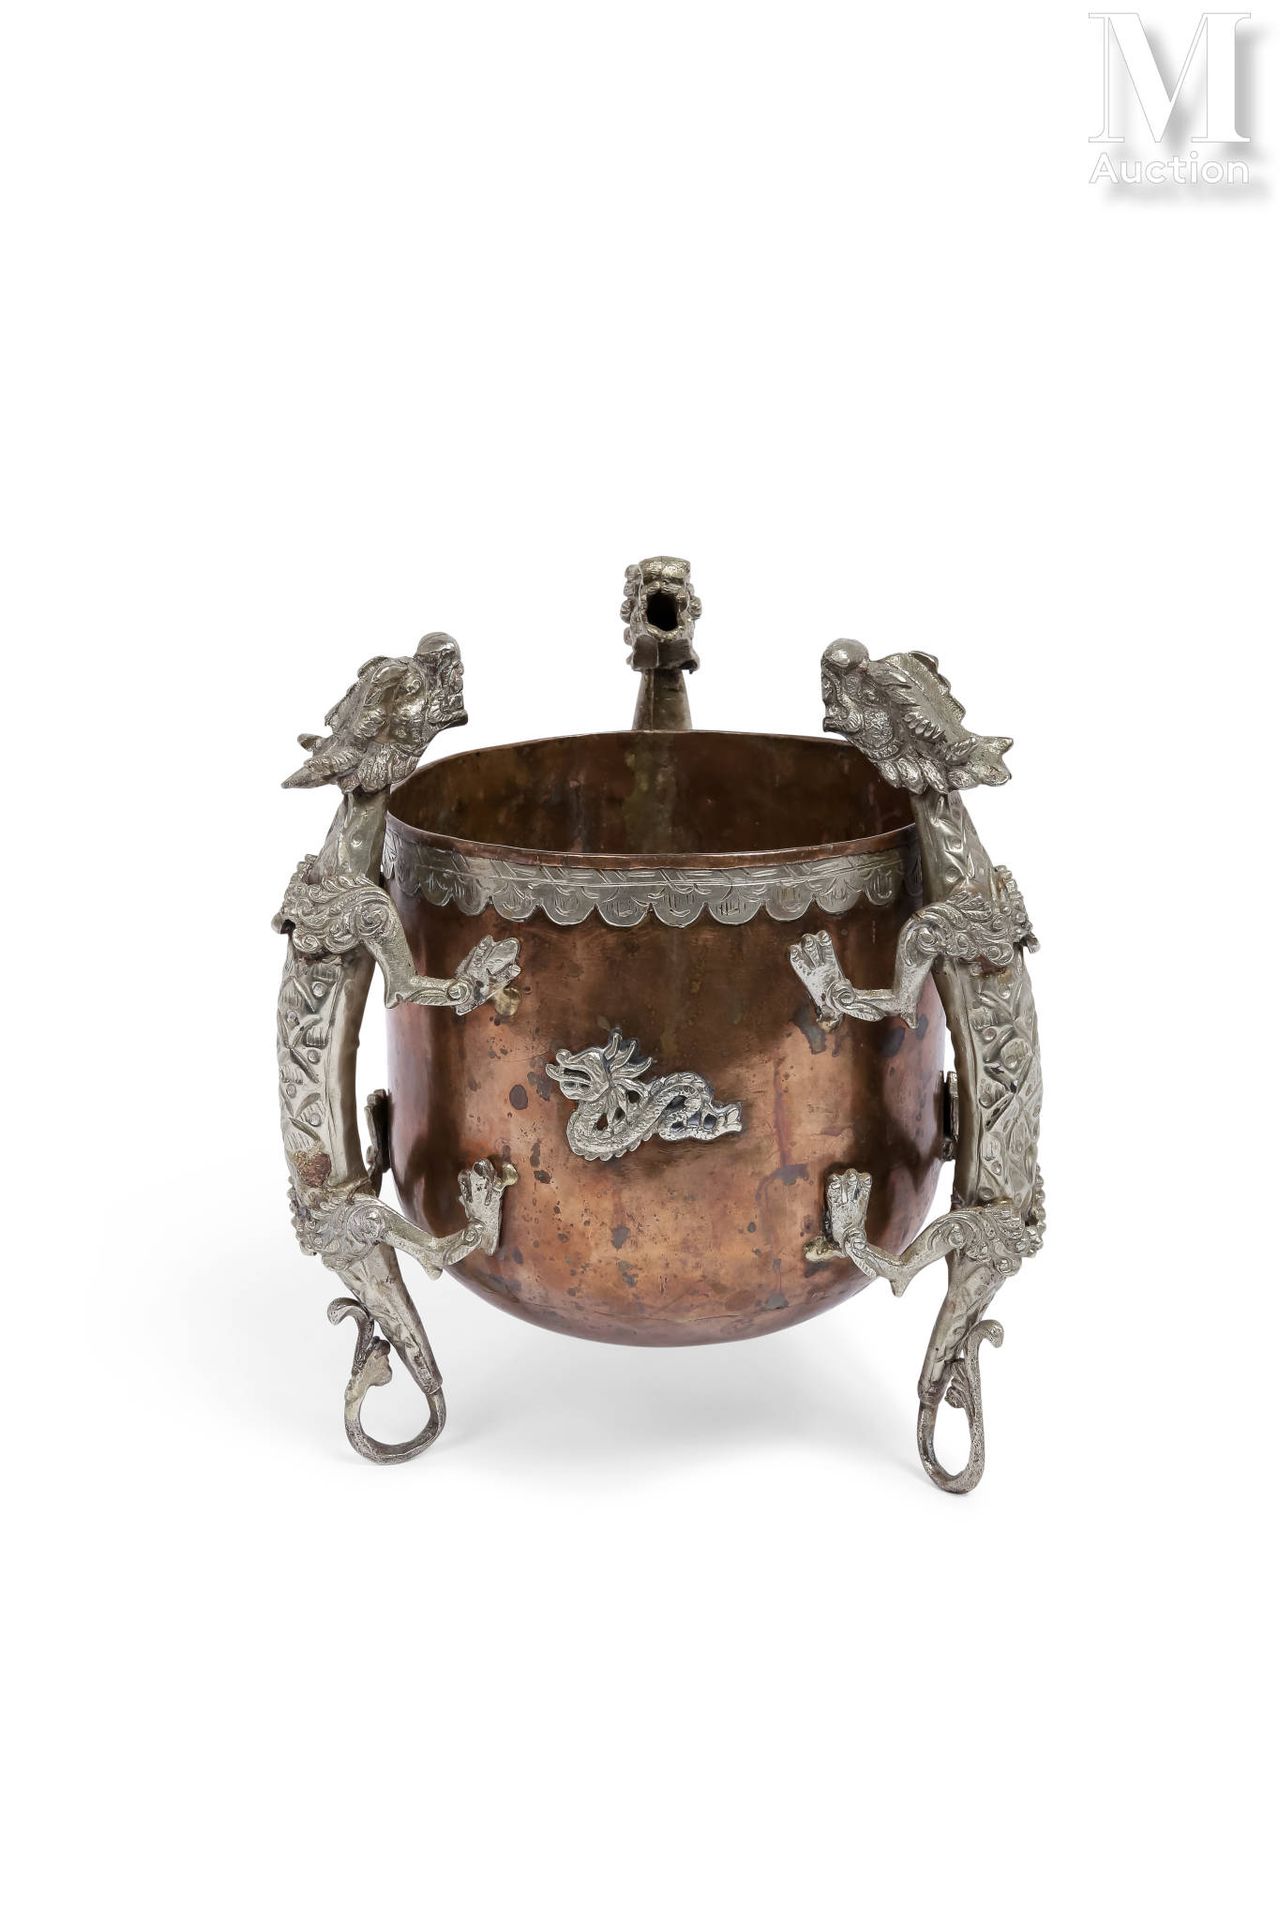 CHINE, XXe siècle 铜壶



有三条龙的装饰，支撑着这套装置。



高：23厘米 - 直径：15厘米 - 重量：1公斤